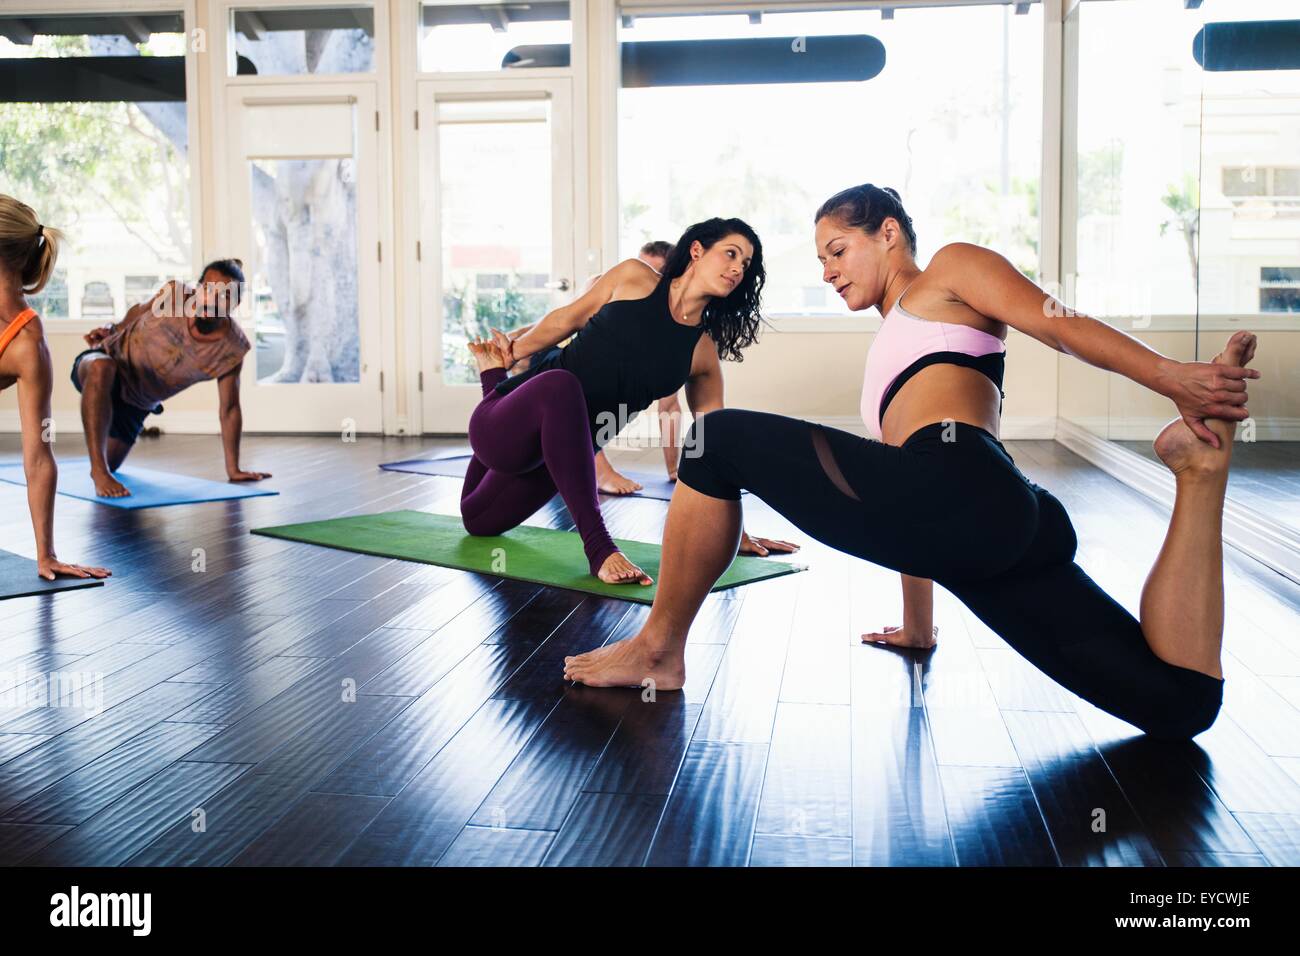 Yoga-Lehrer demonstrieren Yogaposition in Klasse Stockfoto